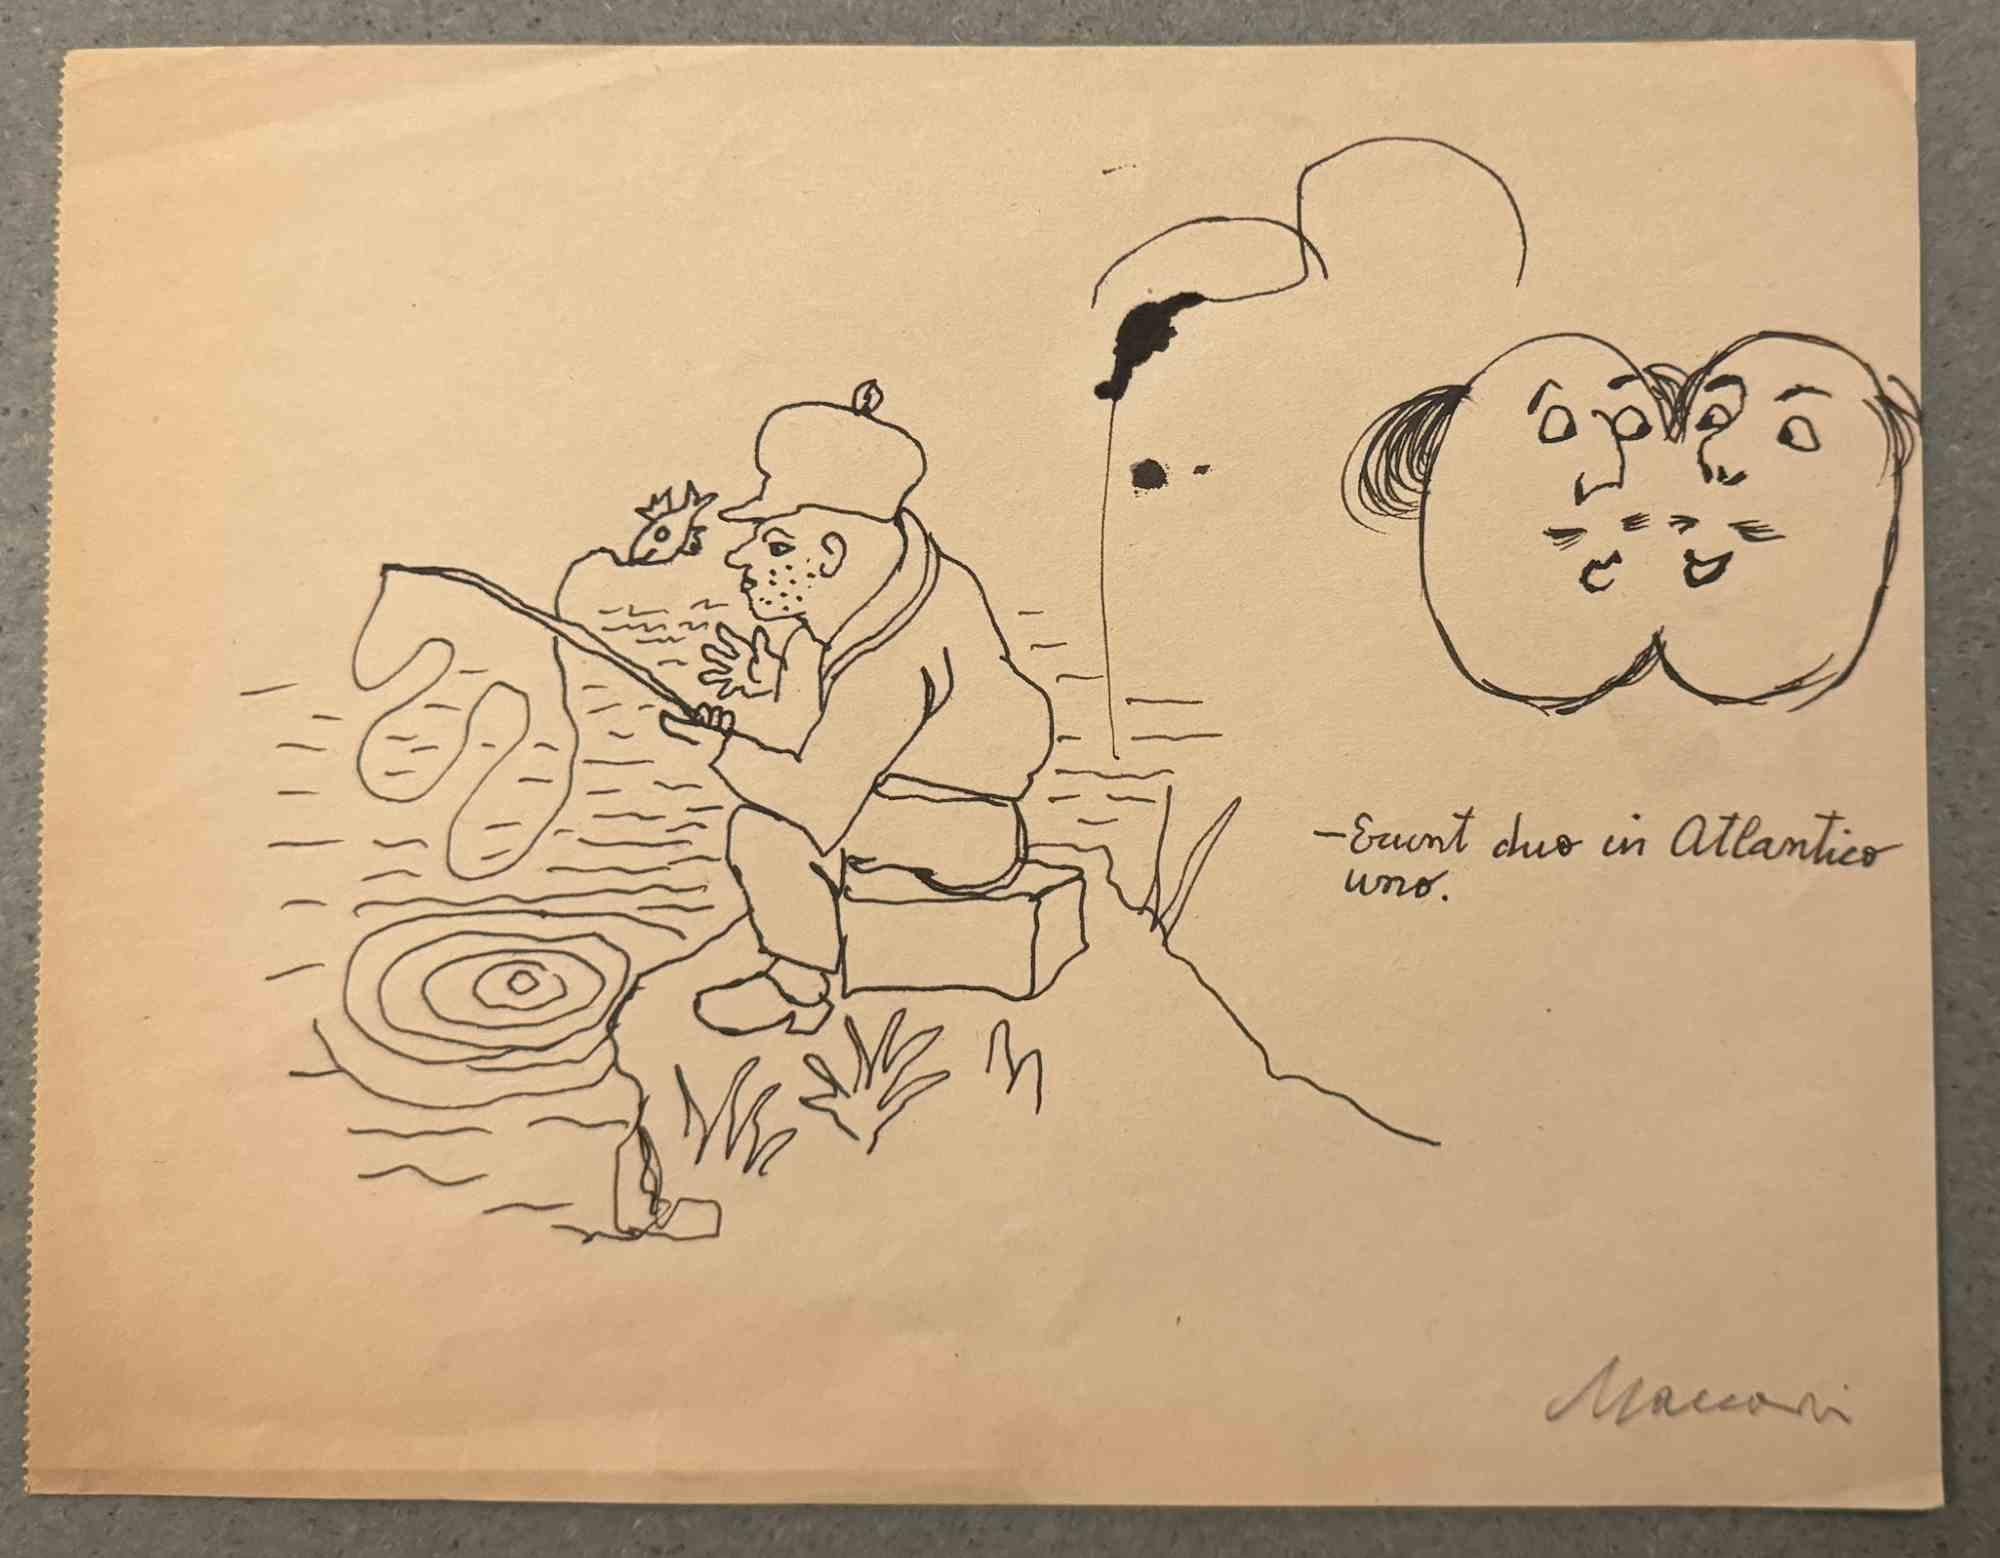 Fishing ist eine Tuschezeichnung von Mino Maccari (1924-1989) aus der Mitte des 20. Jahrhunderts.

Handsigniert.

Guter Zustand mit leichten Stockflecken.

Mino Maccari (Siena, 1924-Rom, 16. Juni 1989) war ein italienischer Schriftsteller, Maler,